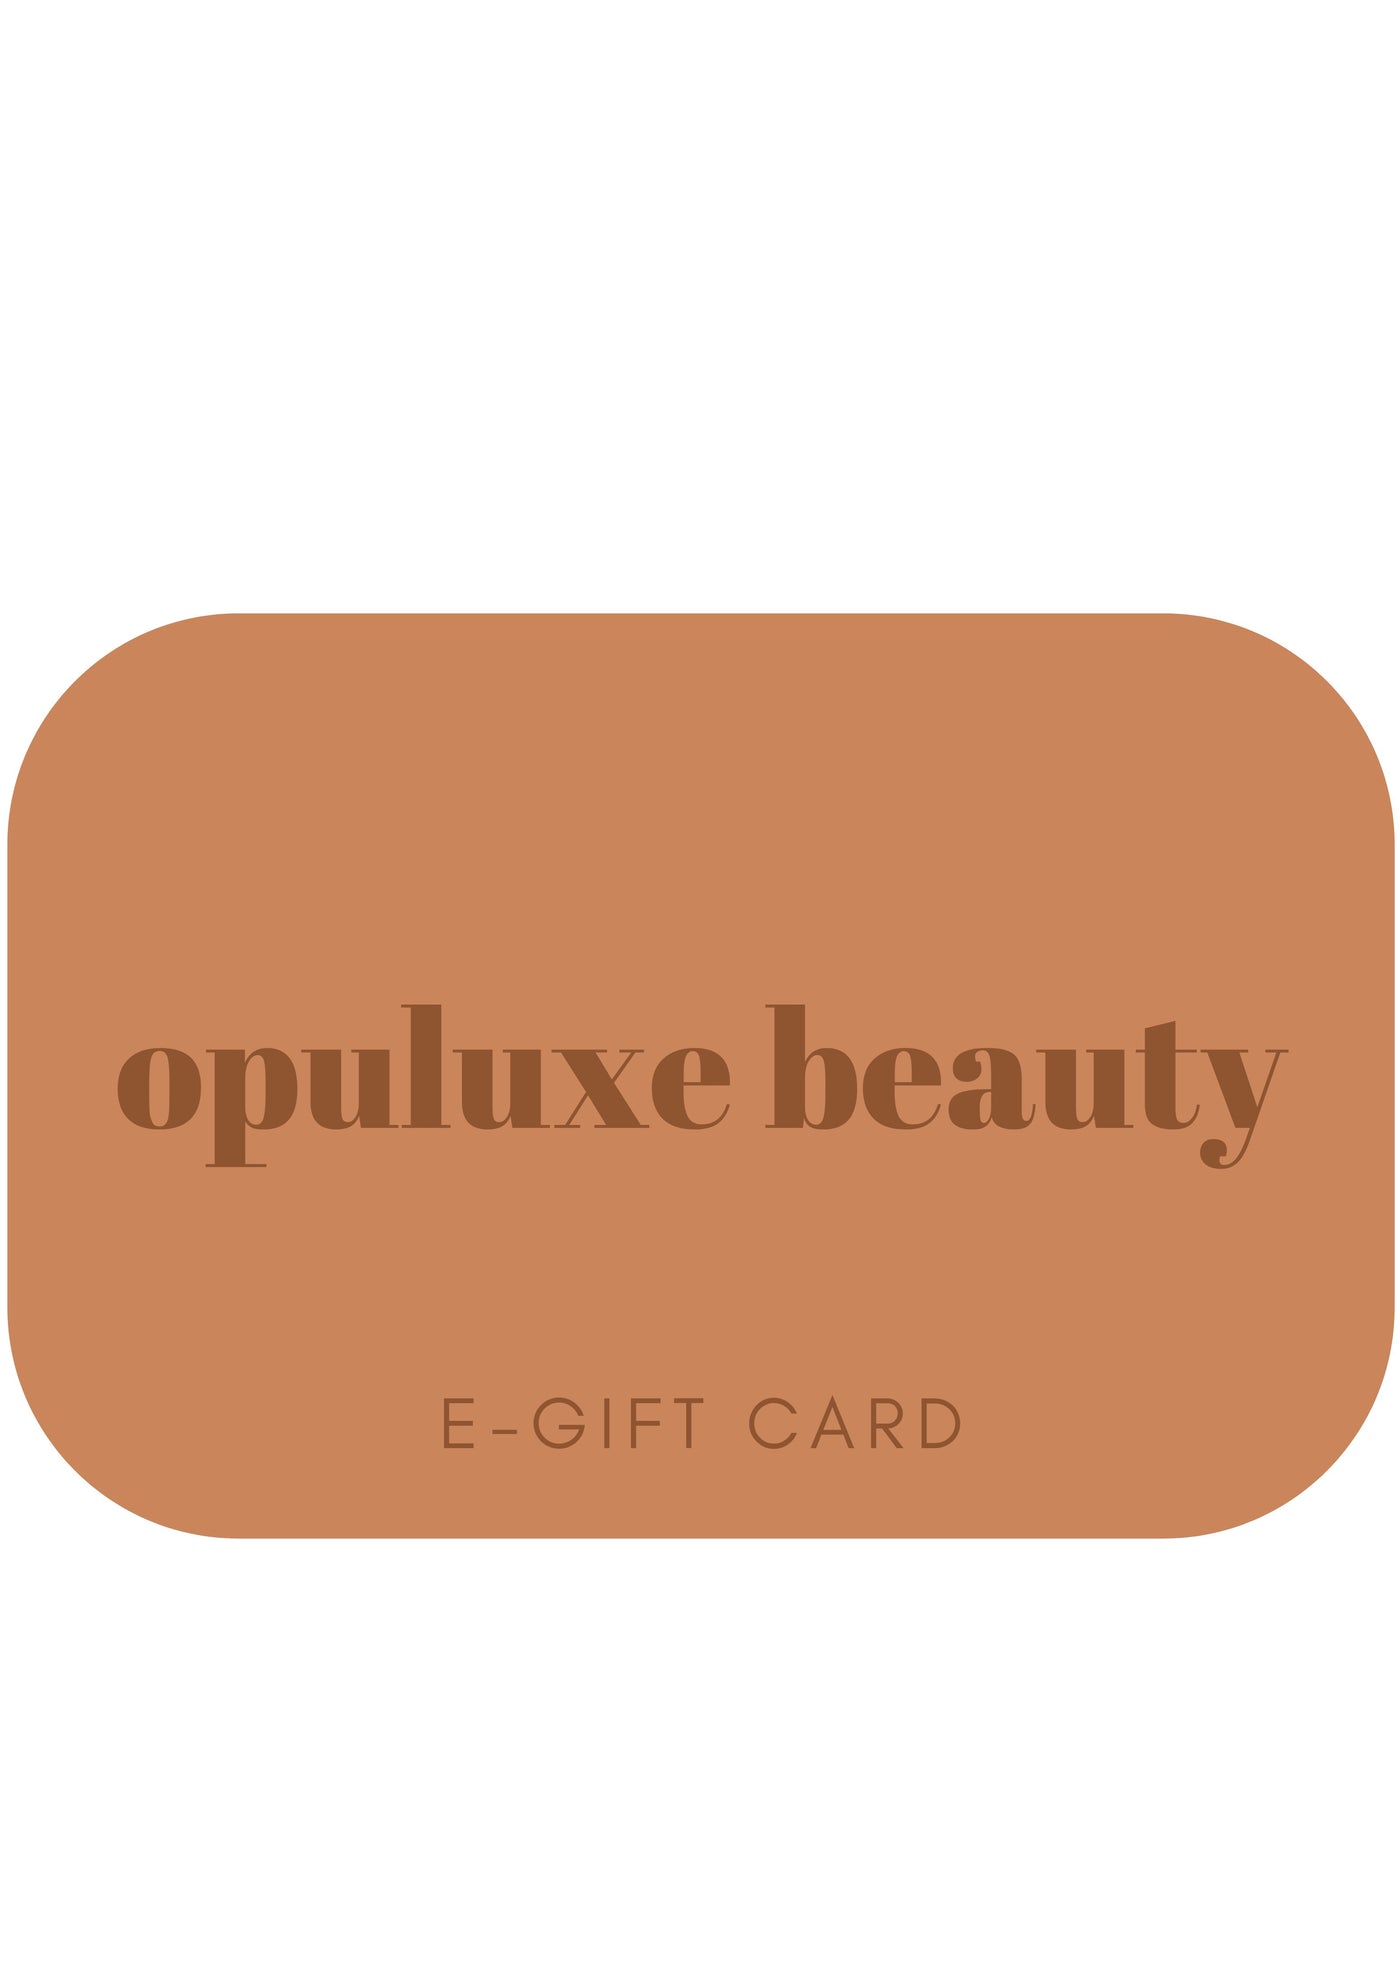 E-GIFT CARD digital gift card e-gift voucher Opuluxe Beauty®